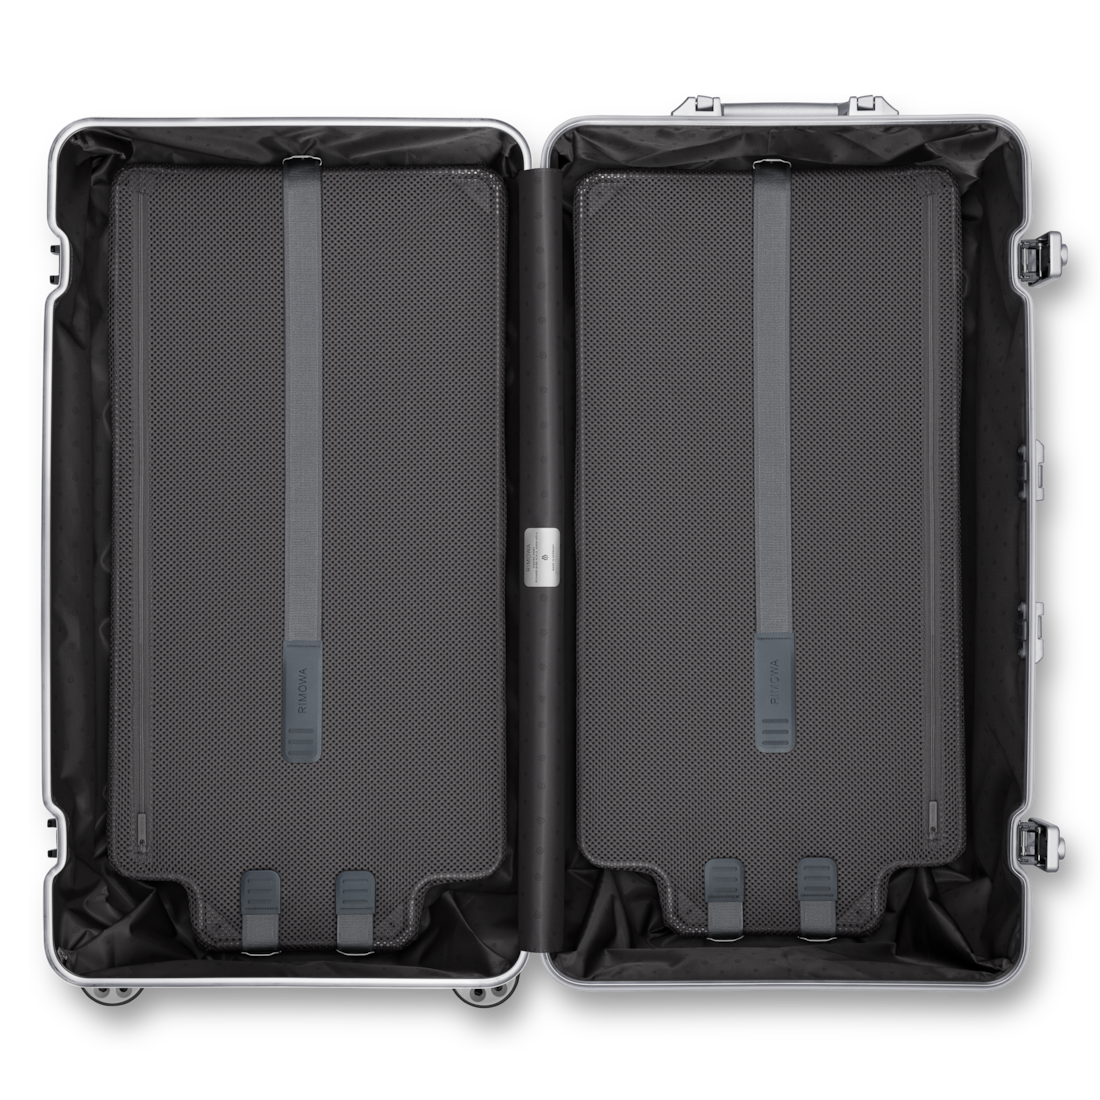 Original Trunk Plus Large Aluminum Suitcase | Silver | RIMOWA